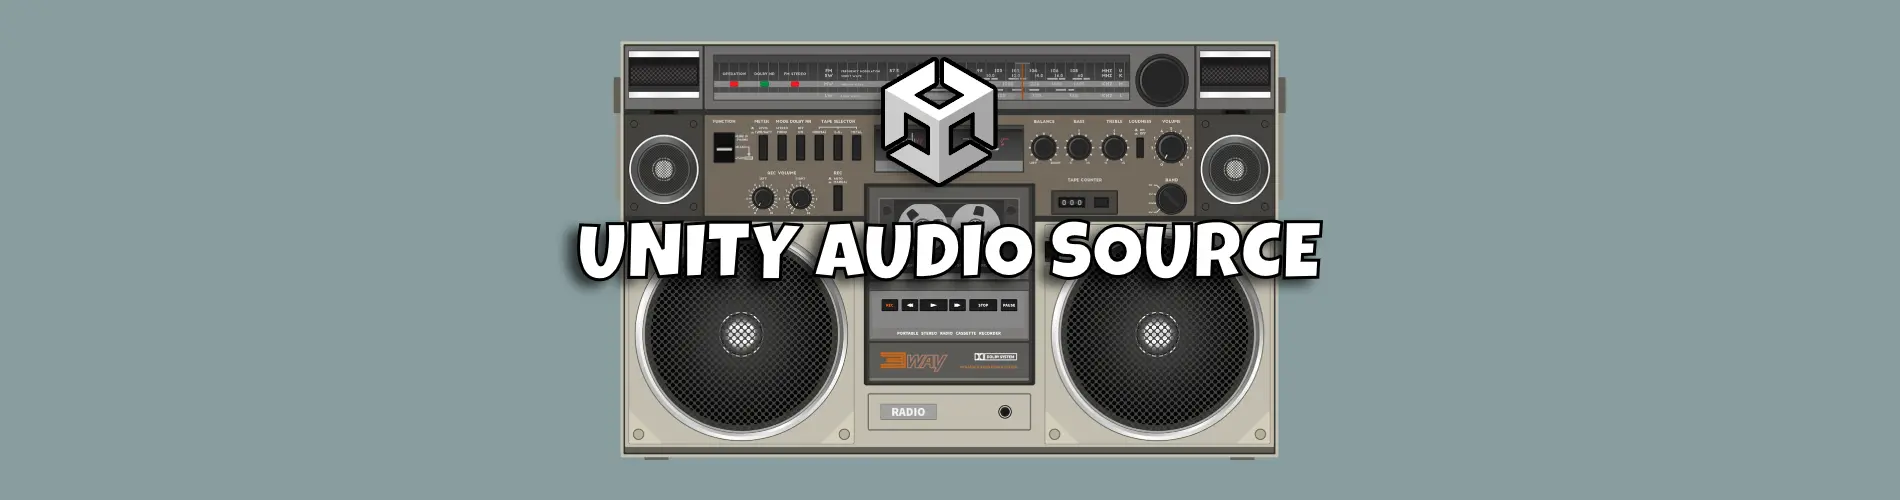 Unity audio source